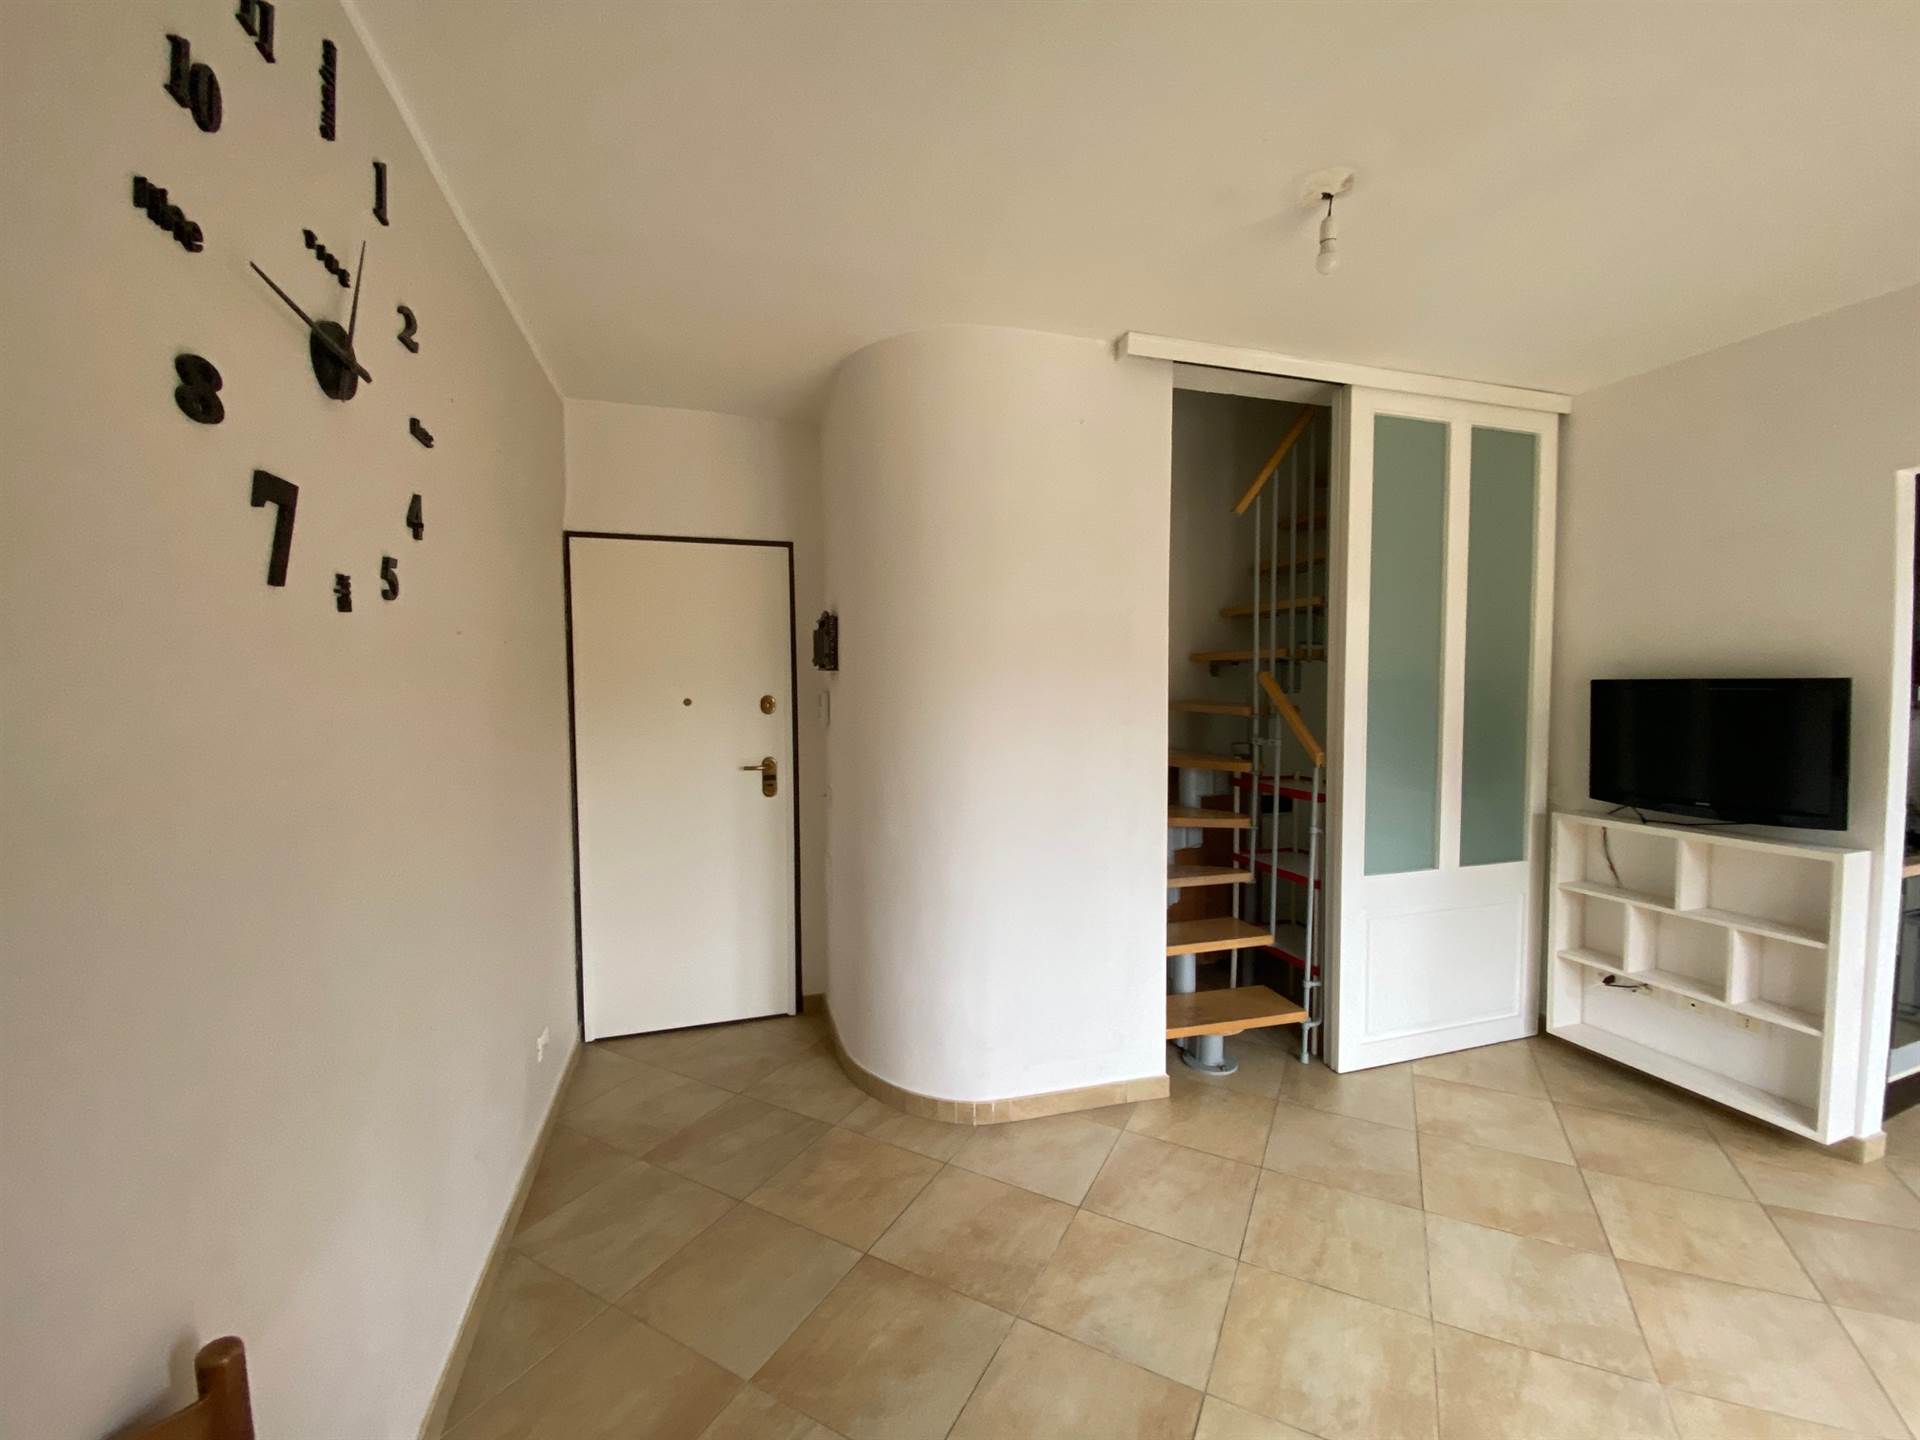 Appartamento in vendita a Signa, 3 locali, zona Località: STAZIONE, prezzo € 155.000 | PortaleAgenzieImmobiliari.it